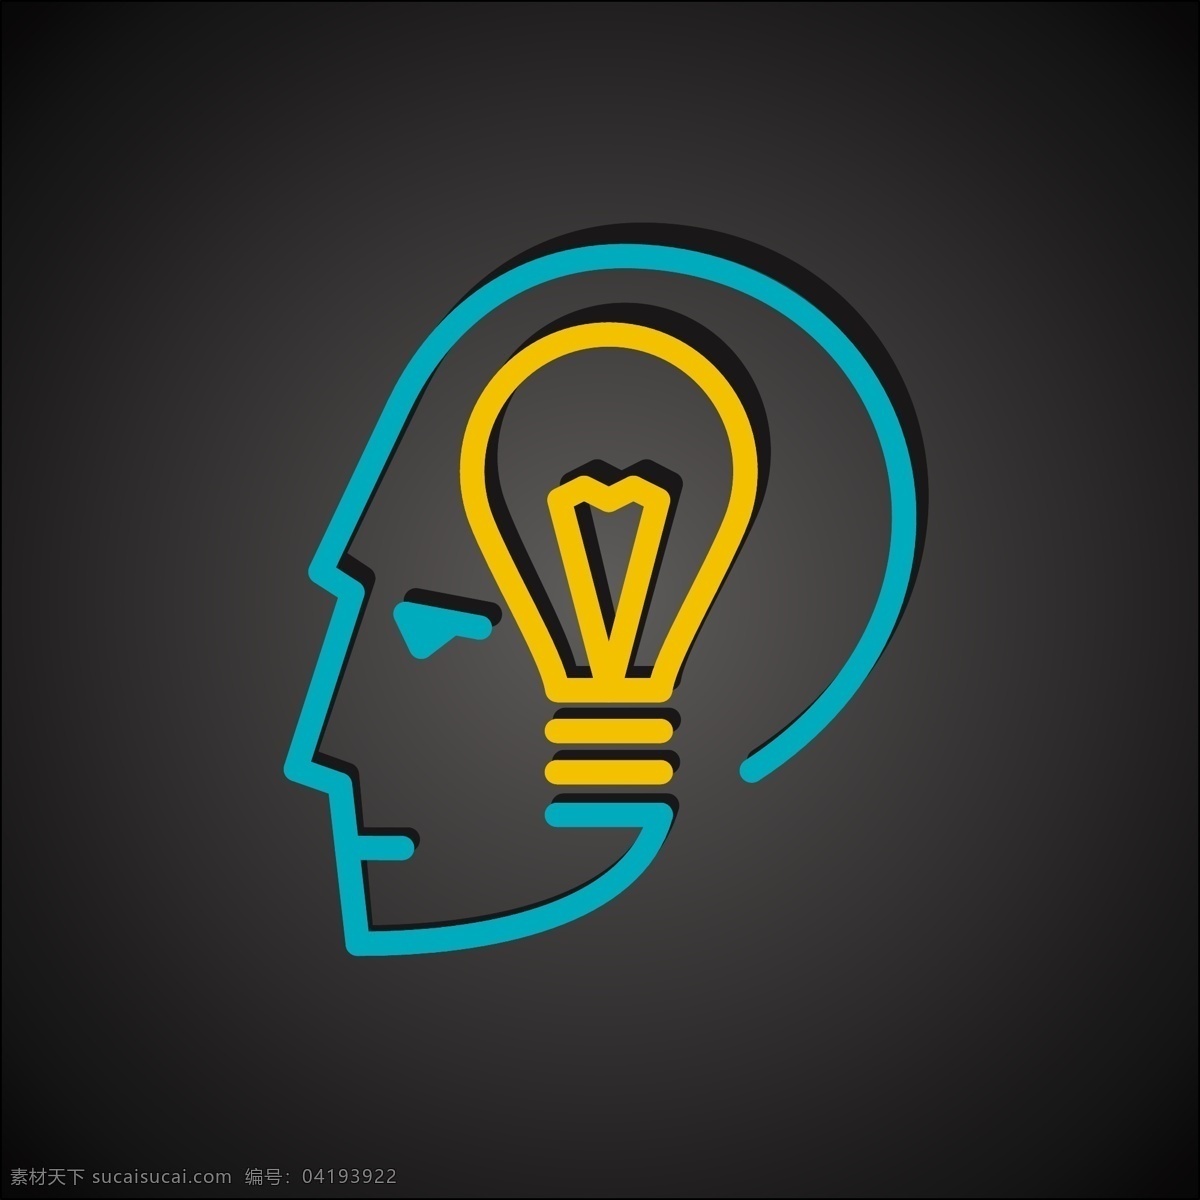 大脑与电灯泡 大脑 电灯泡 思维 创新思维 创意logo 生活百科 矢量素材 黑色